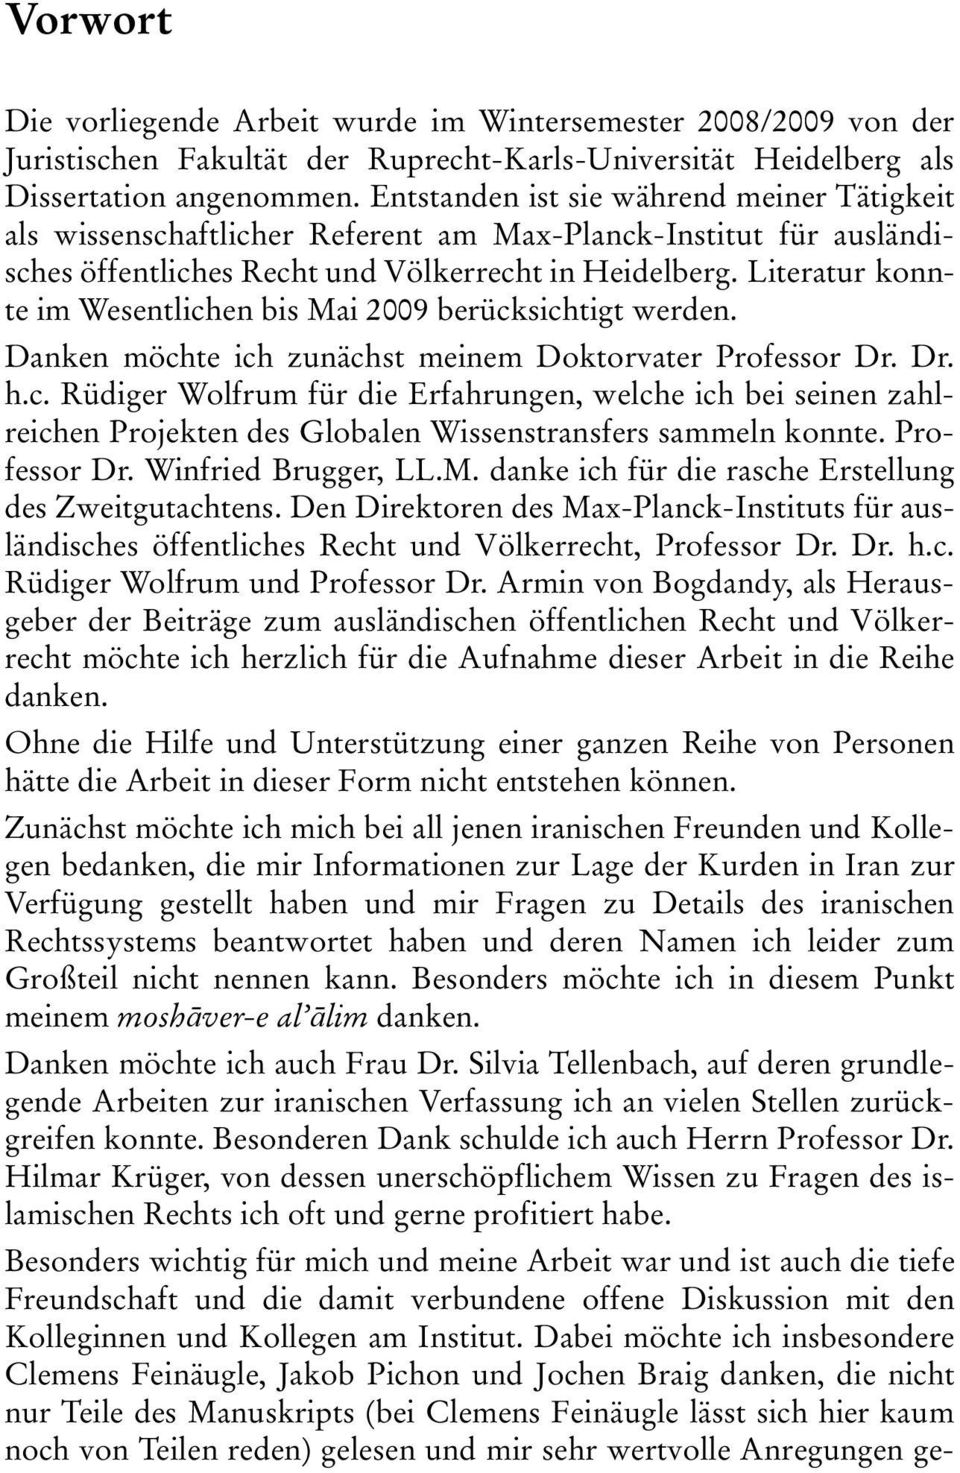 Literatur konnte im Wesentlichen bis Mai 2009 berücksichtigt werden. Danken möchte ich zunächst meinem Doktorvater Professor Dr. Dr. h.c. Rüdiger Wolfrum für die Erfahrungen, welche ich bei seinen zahlreichen Projekten des Globalen Wissenstransfers sammeln konnte.